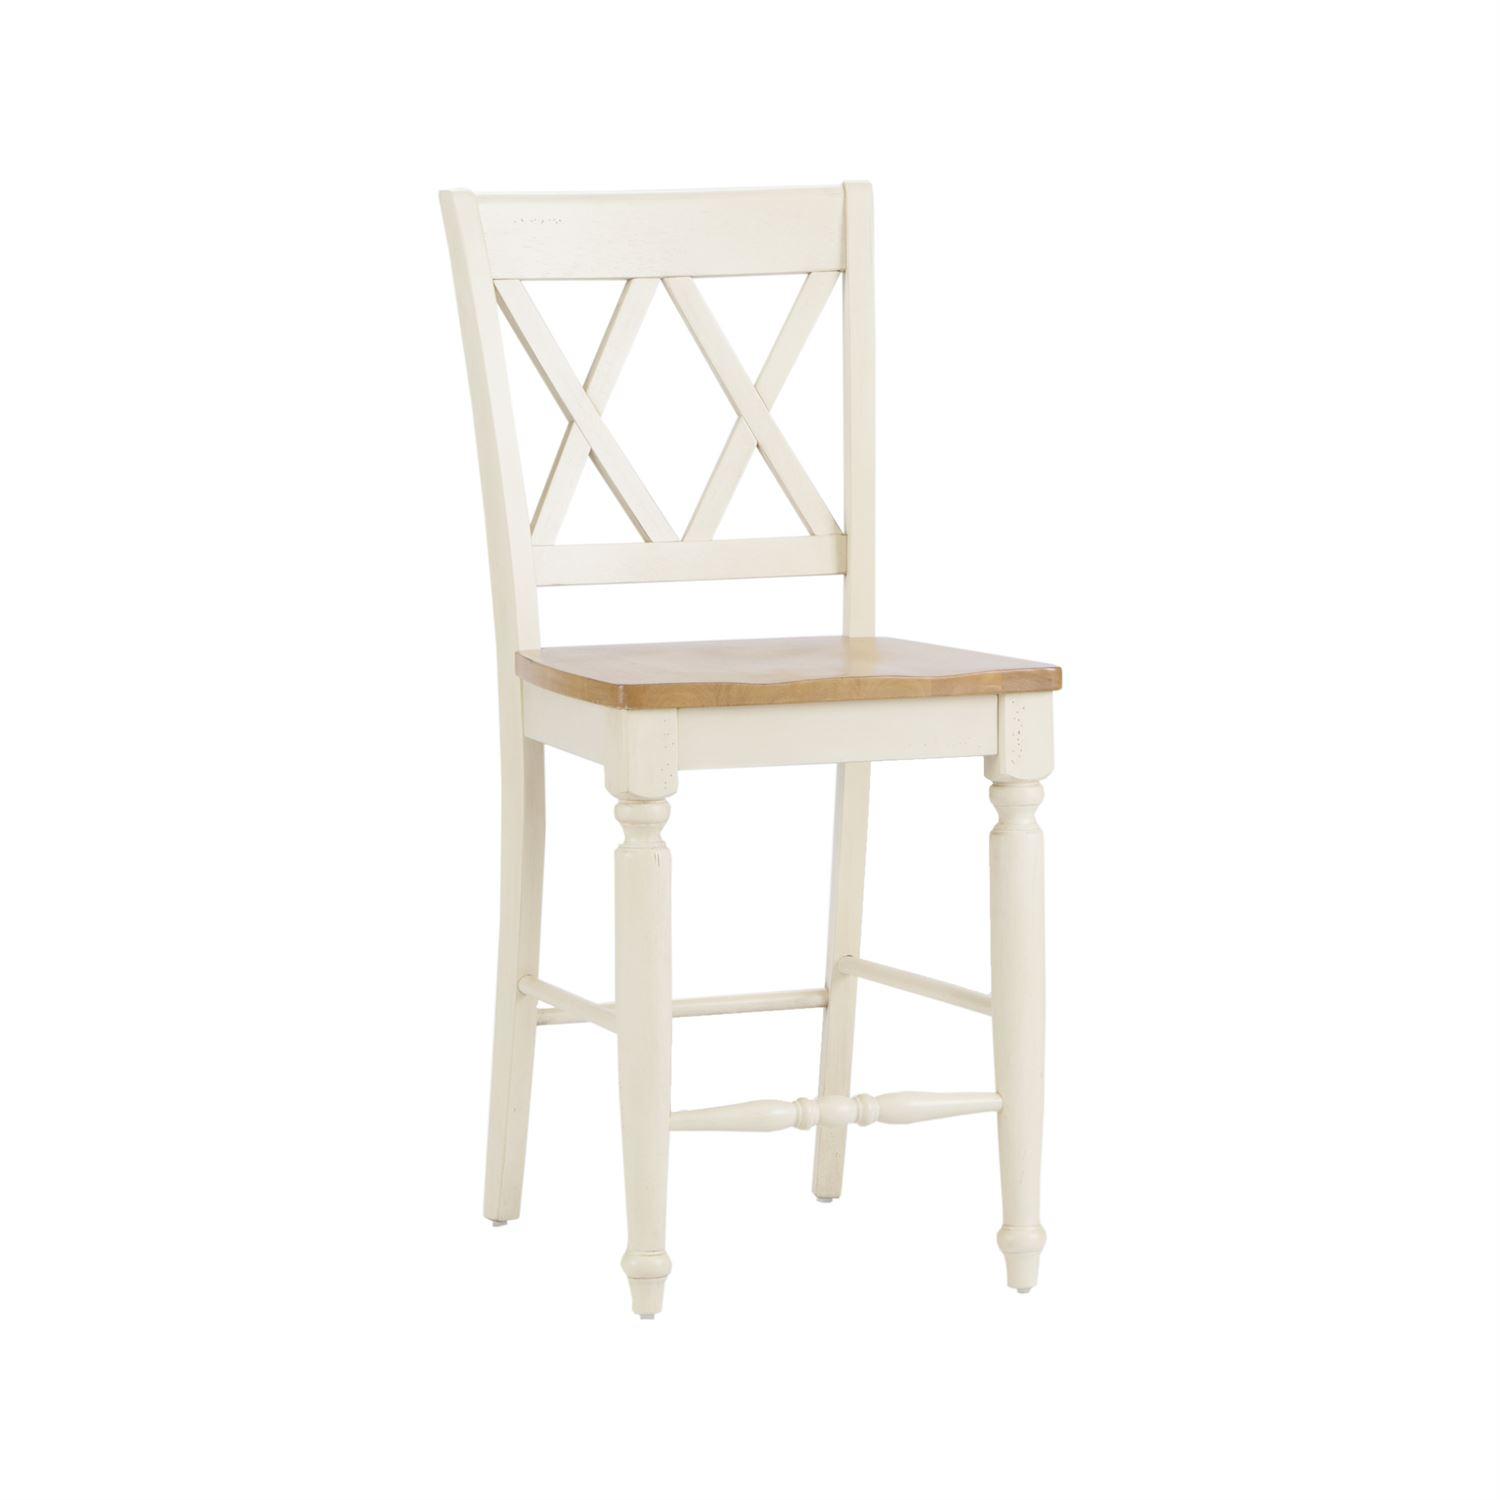 Farmhouse Counter Chair Al Fresco III  (841-CD) Counter Chair 841-B300024 in White 